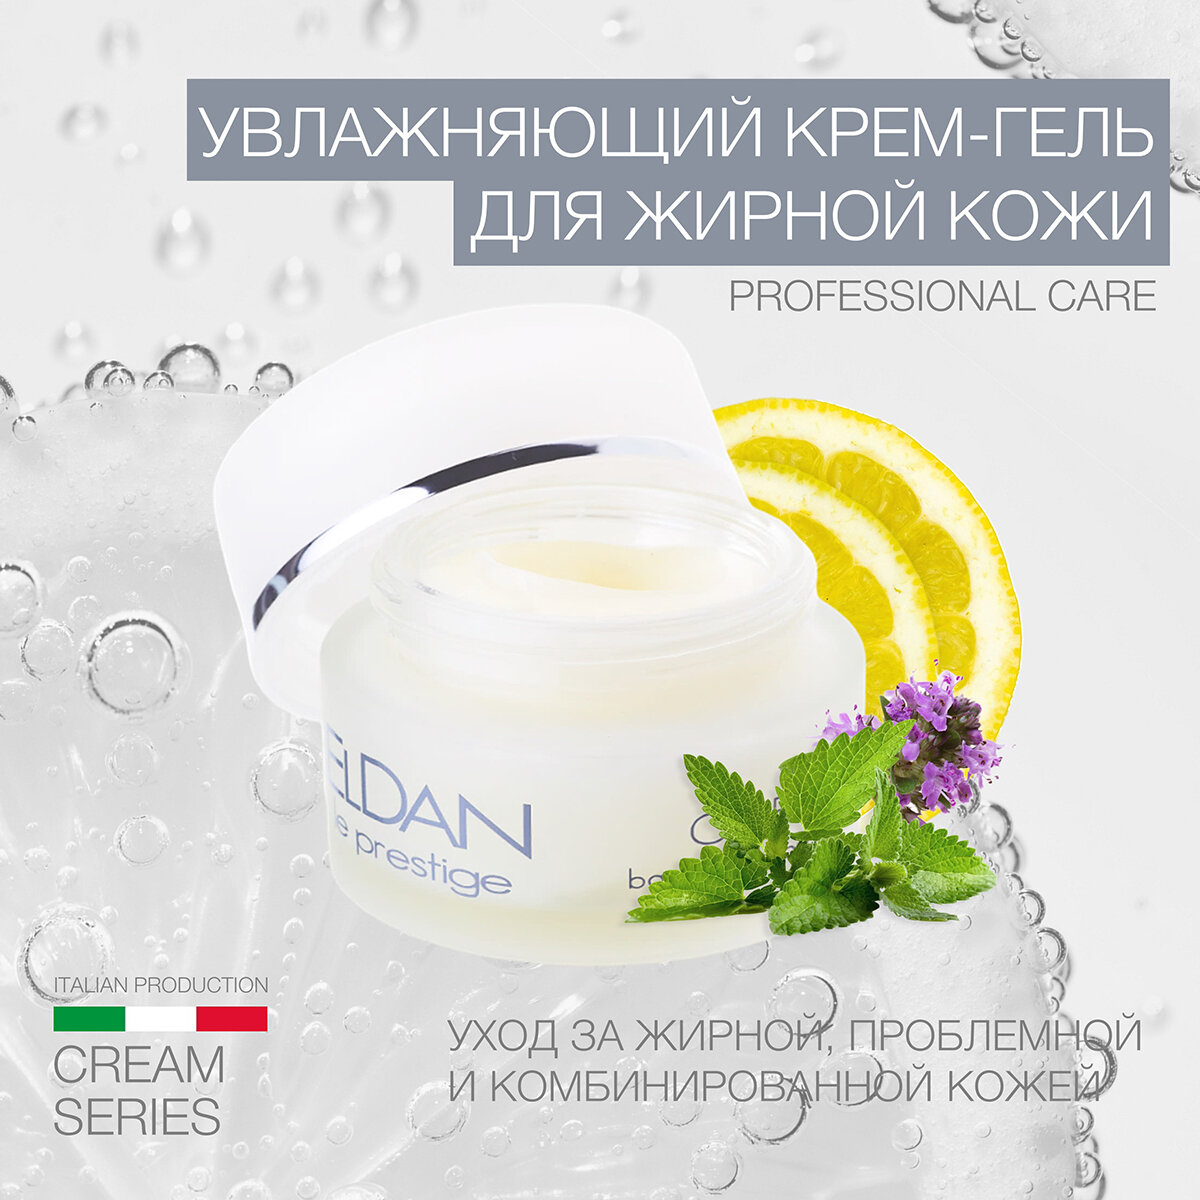 Увлажняющий крем-гель для жирной кожи ELDAN cosmetics противовоспалительный для проблемной кожи, 50 мл